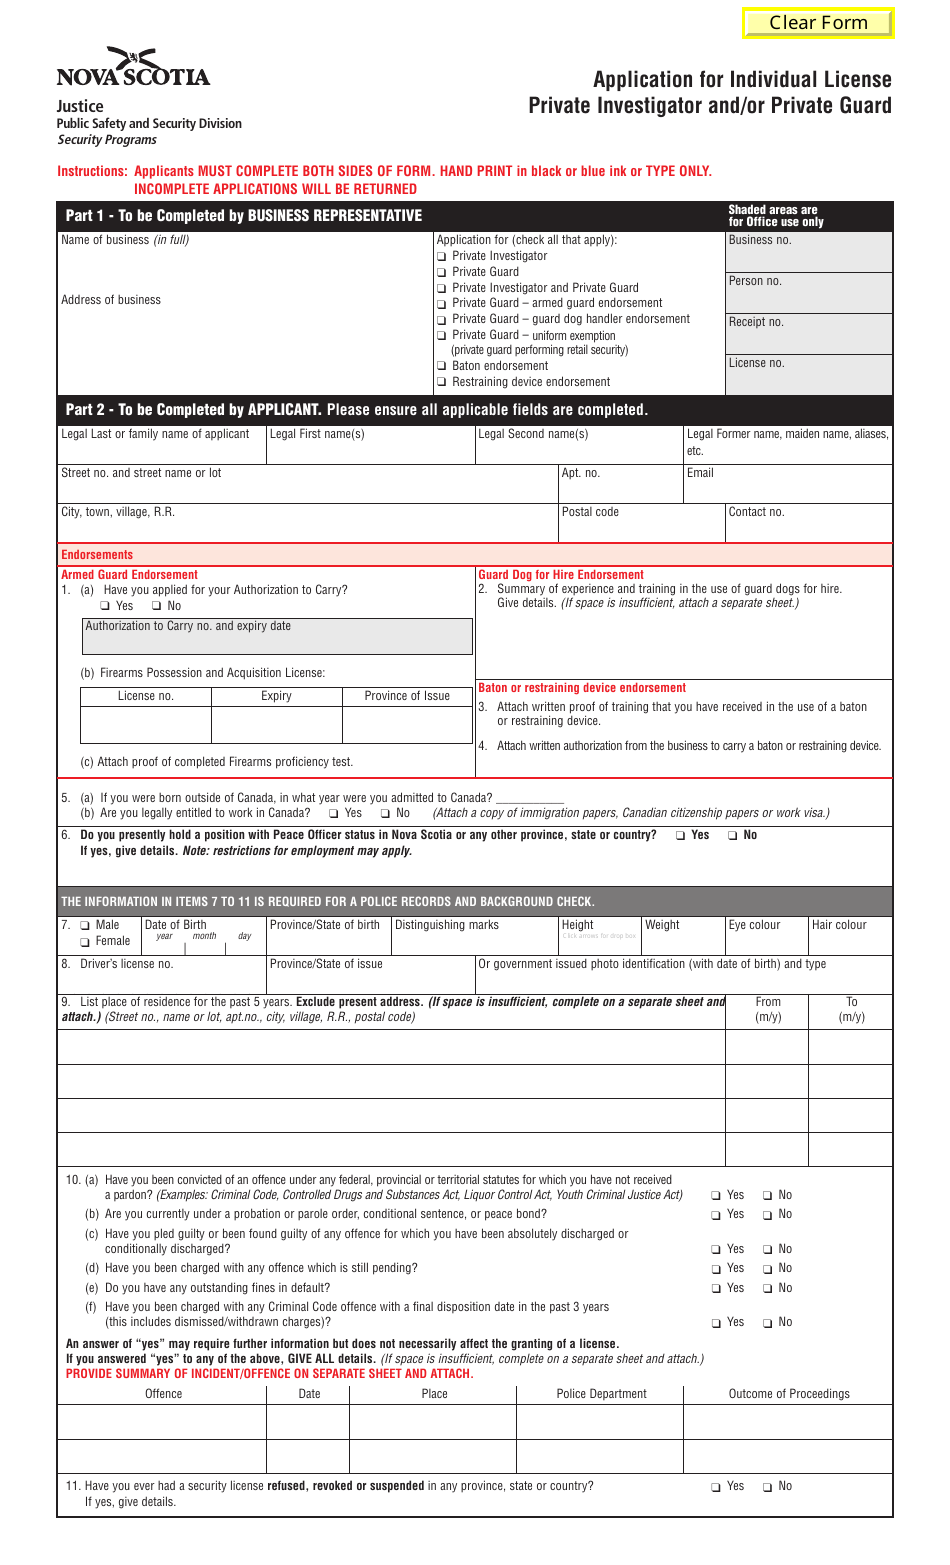 Form 3 Application for Individual License - Private Investigator and/or Private Guard - Nova Scotia, Canada, Page 1